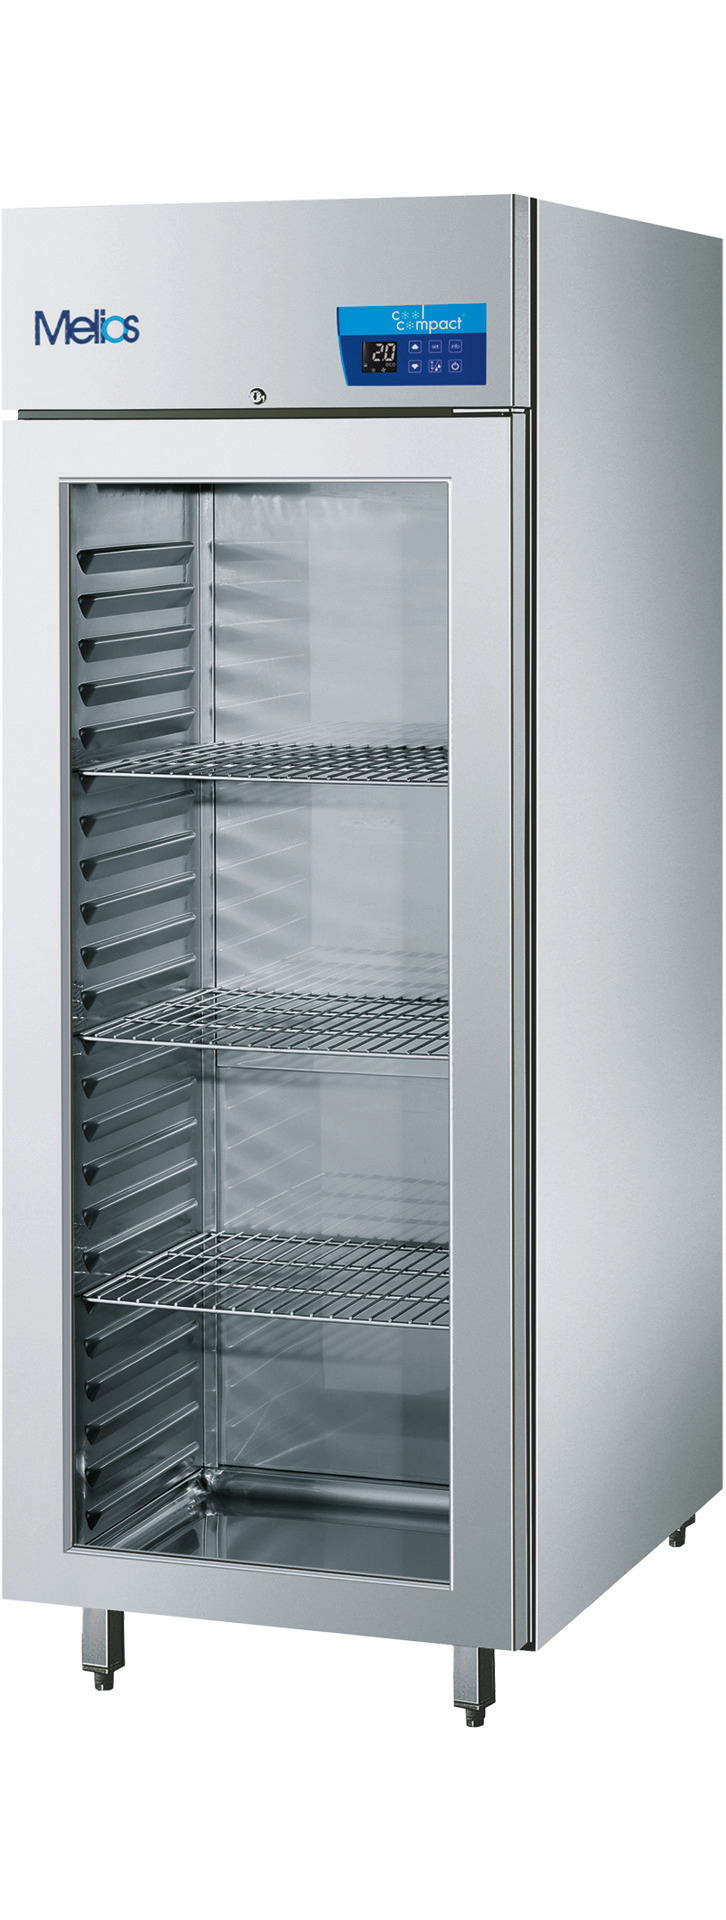 Umluft-Glastürtiefkühlschrank  23 x GN 2/1 / zentralgekühlt